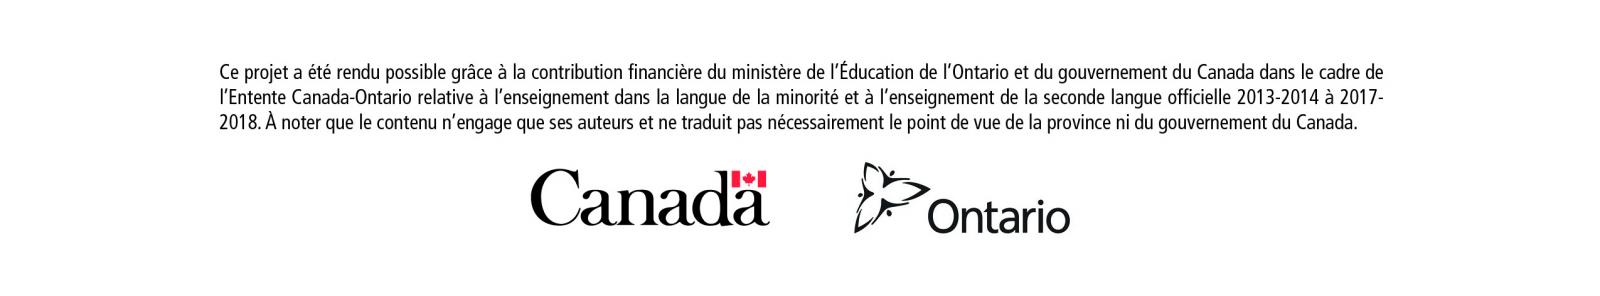 Canada and Ontario Logo